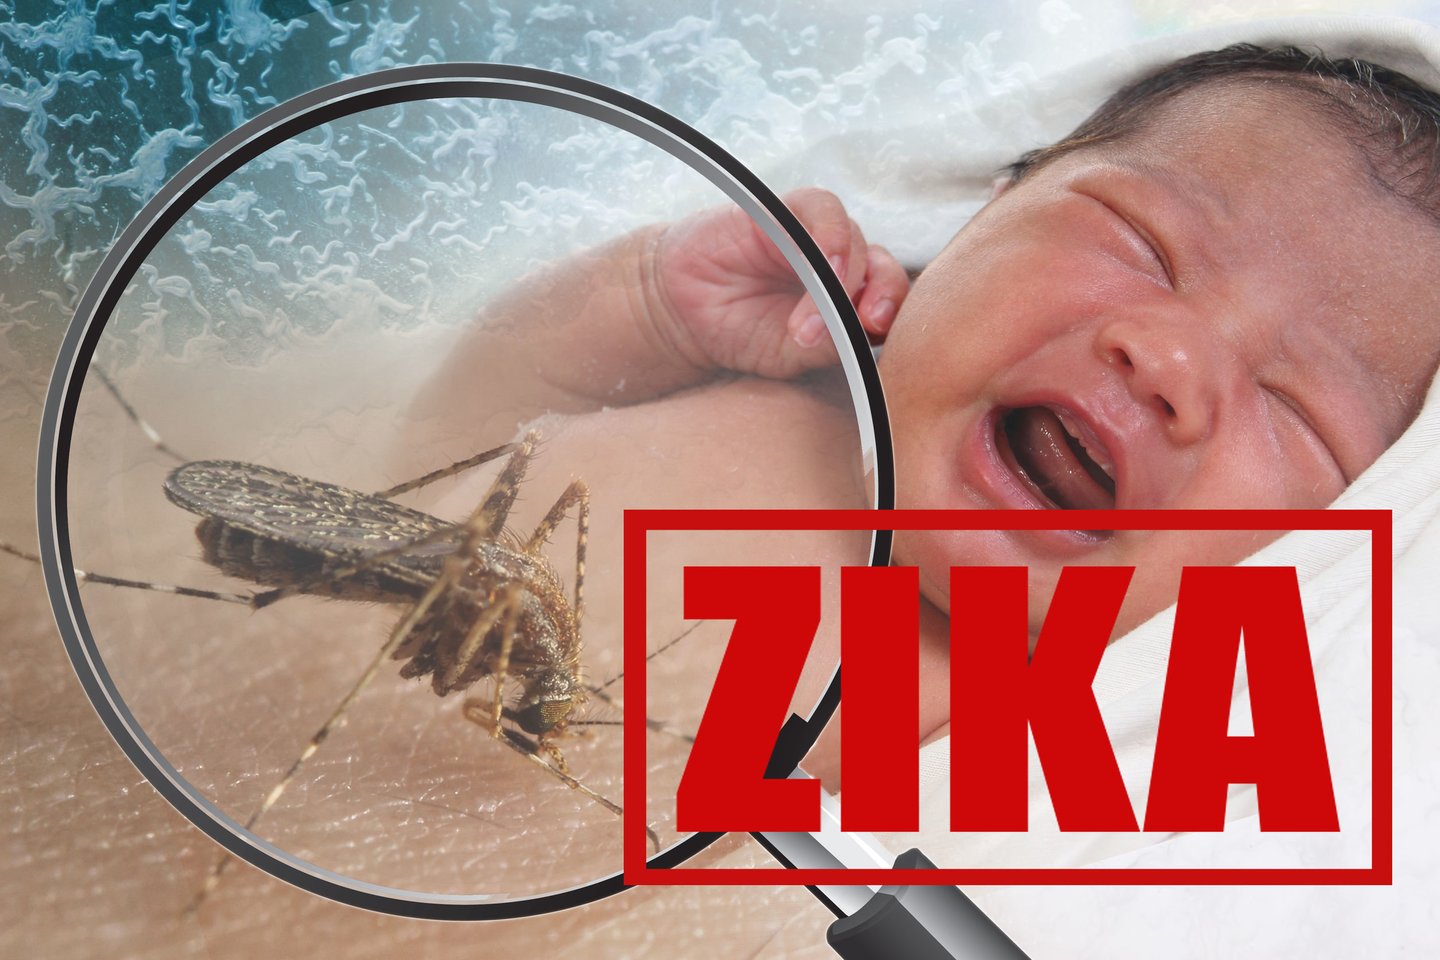 Zikos virusas gali būti susijęs su Guillain-Barre sindromo išsivystymu ar būti naujagimių mikrocefalijųir kitų įgimtų centrinės nervų sistemos pažeidimų priežastis.<br> 123rf nuotr.